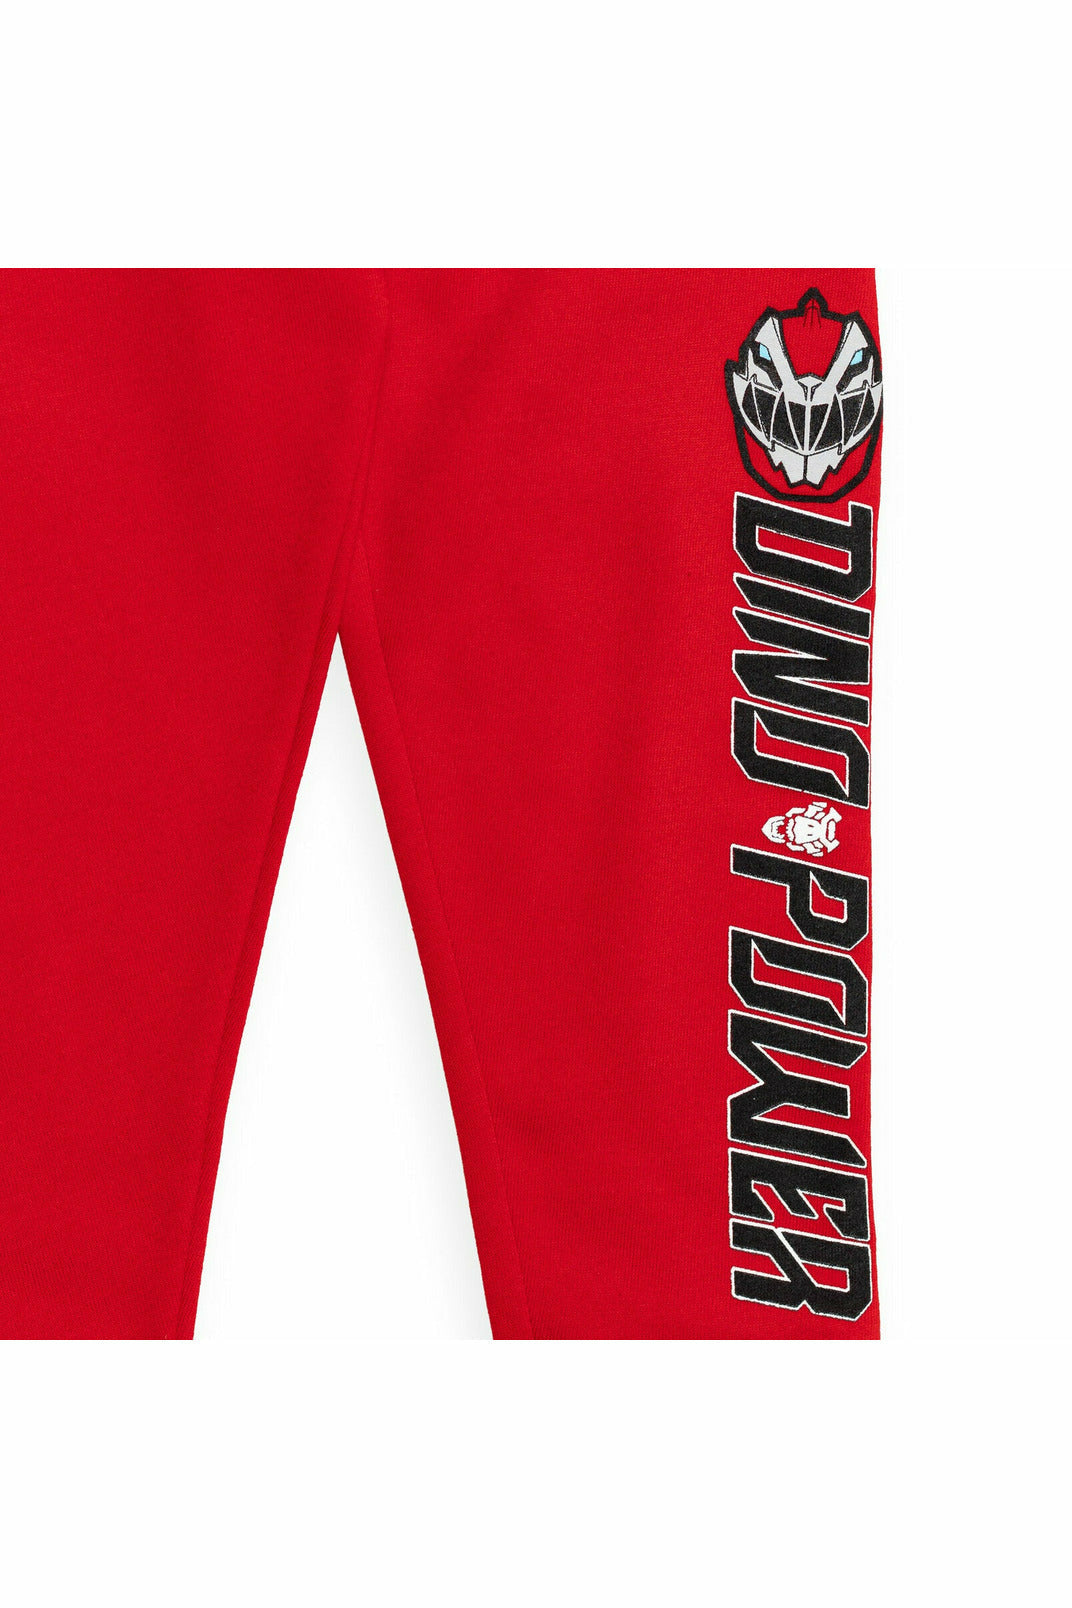 Power Rangers Fleece 2 Pack Pants